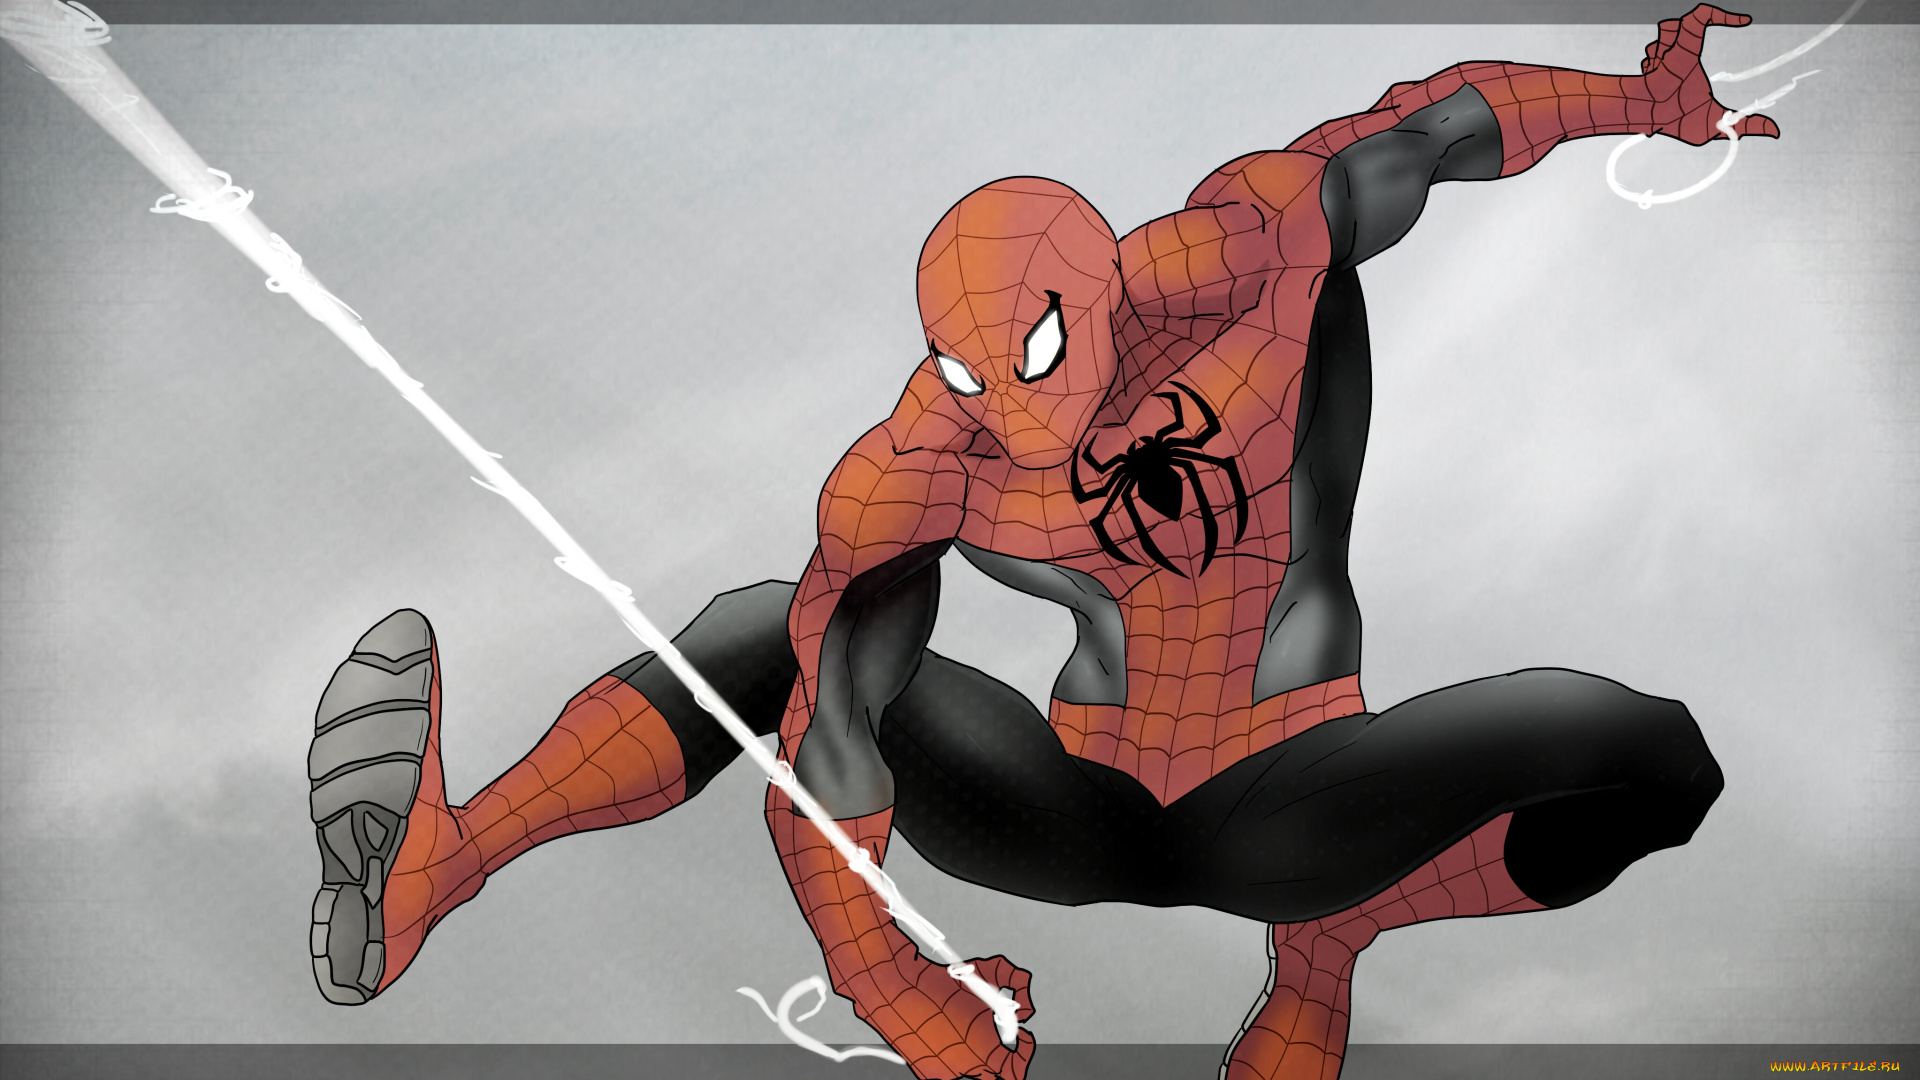 рисованное, комиксы, spider-man, костюм, супергерой